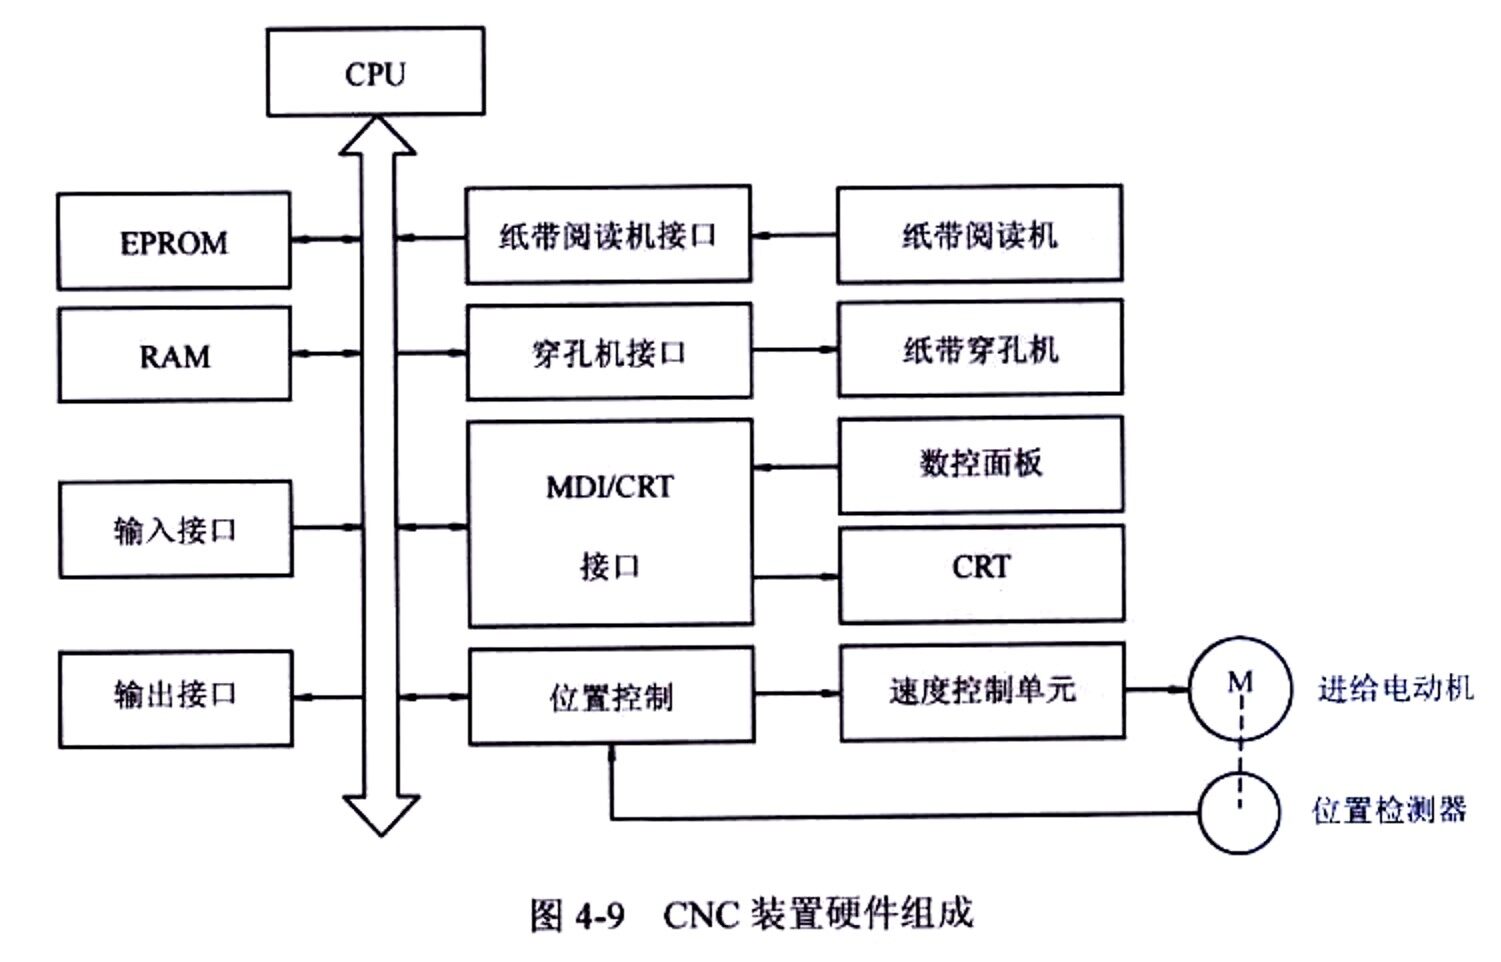 cnc装备硬件组成图